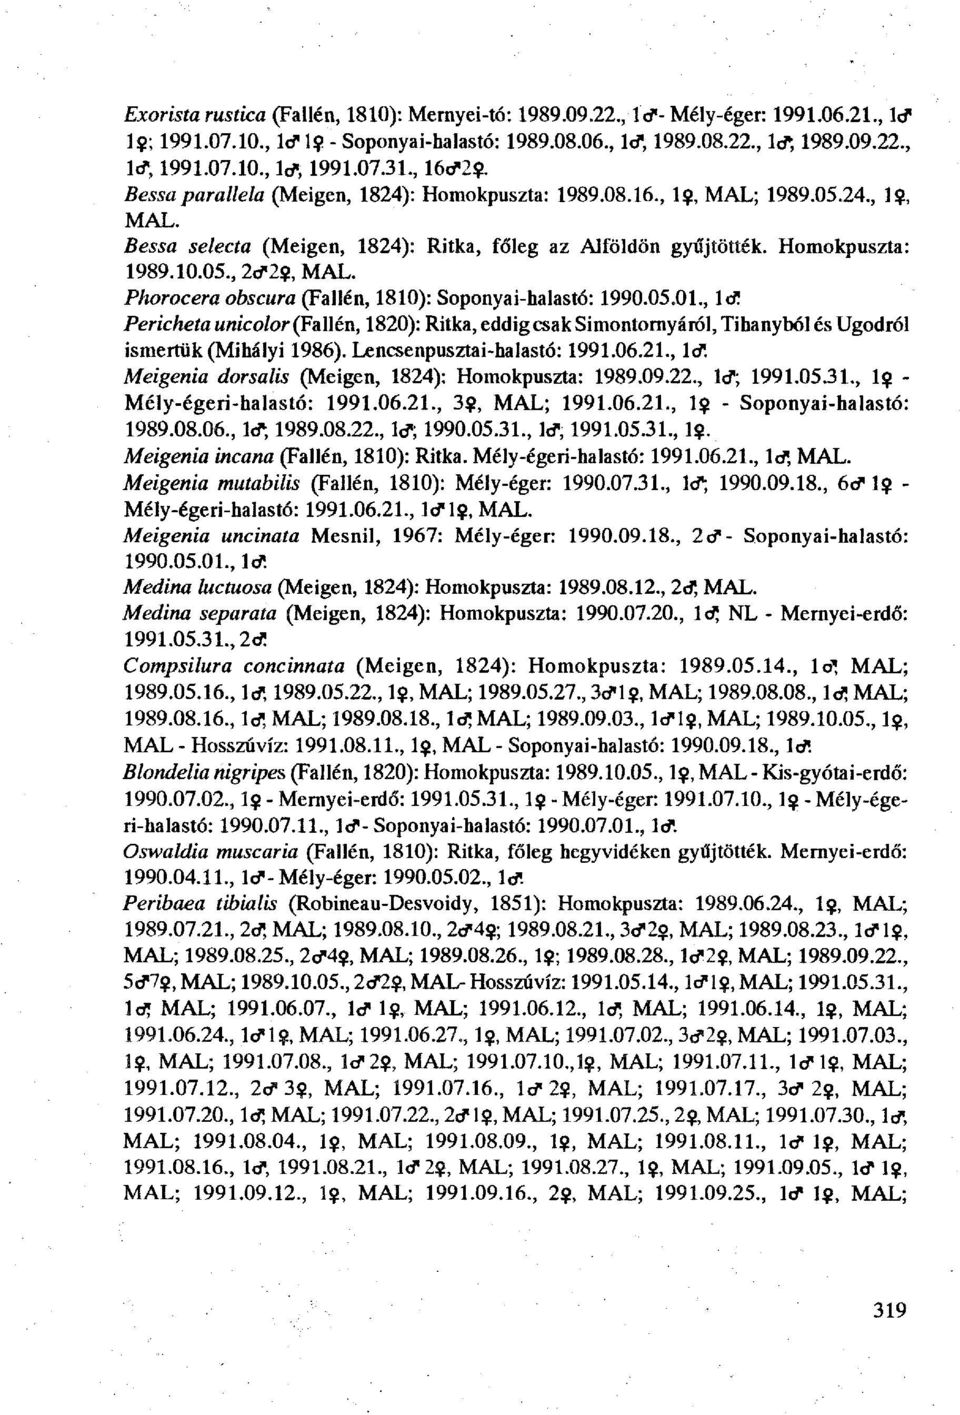 Phorocera obscura (Fallén, 1810): Soponyai-halastó: 1990.05.01., Id! Pericheta unicolor (Fallén, 1820): Ritka, eddig csak Simontornyáról, Tihanyból és Ugodról ismertük (Mihályi 1986).